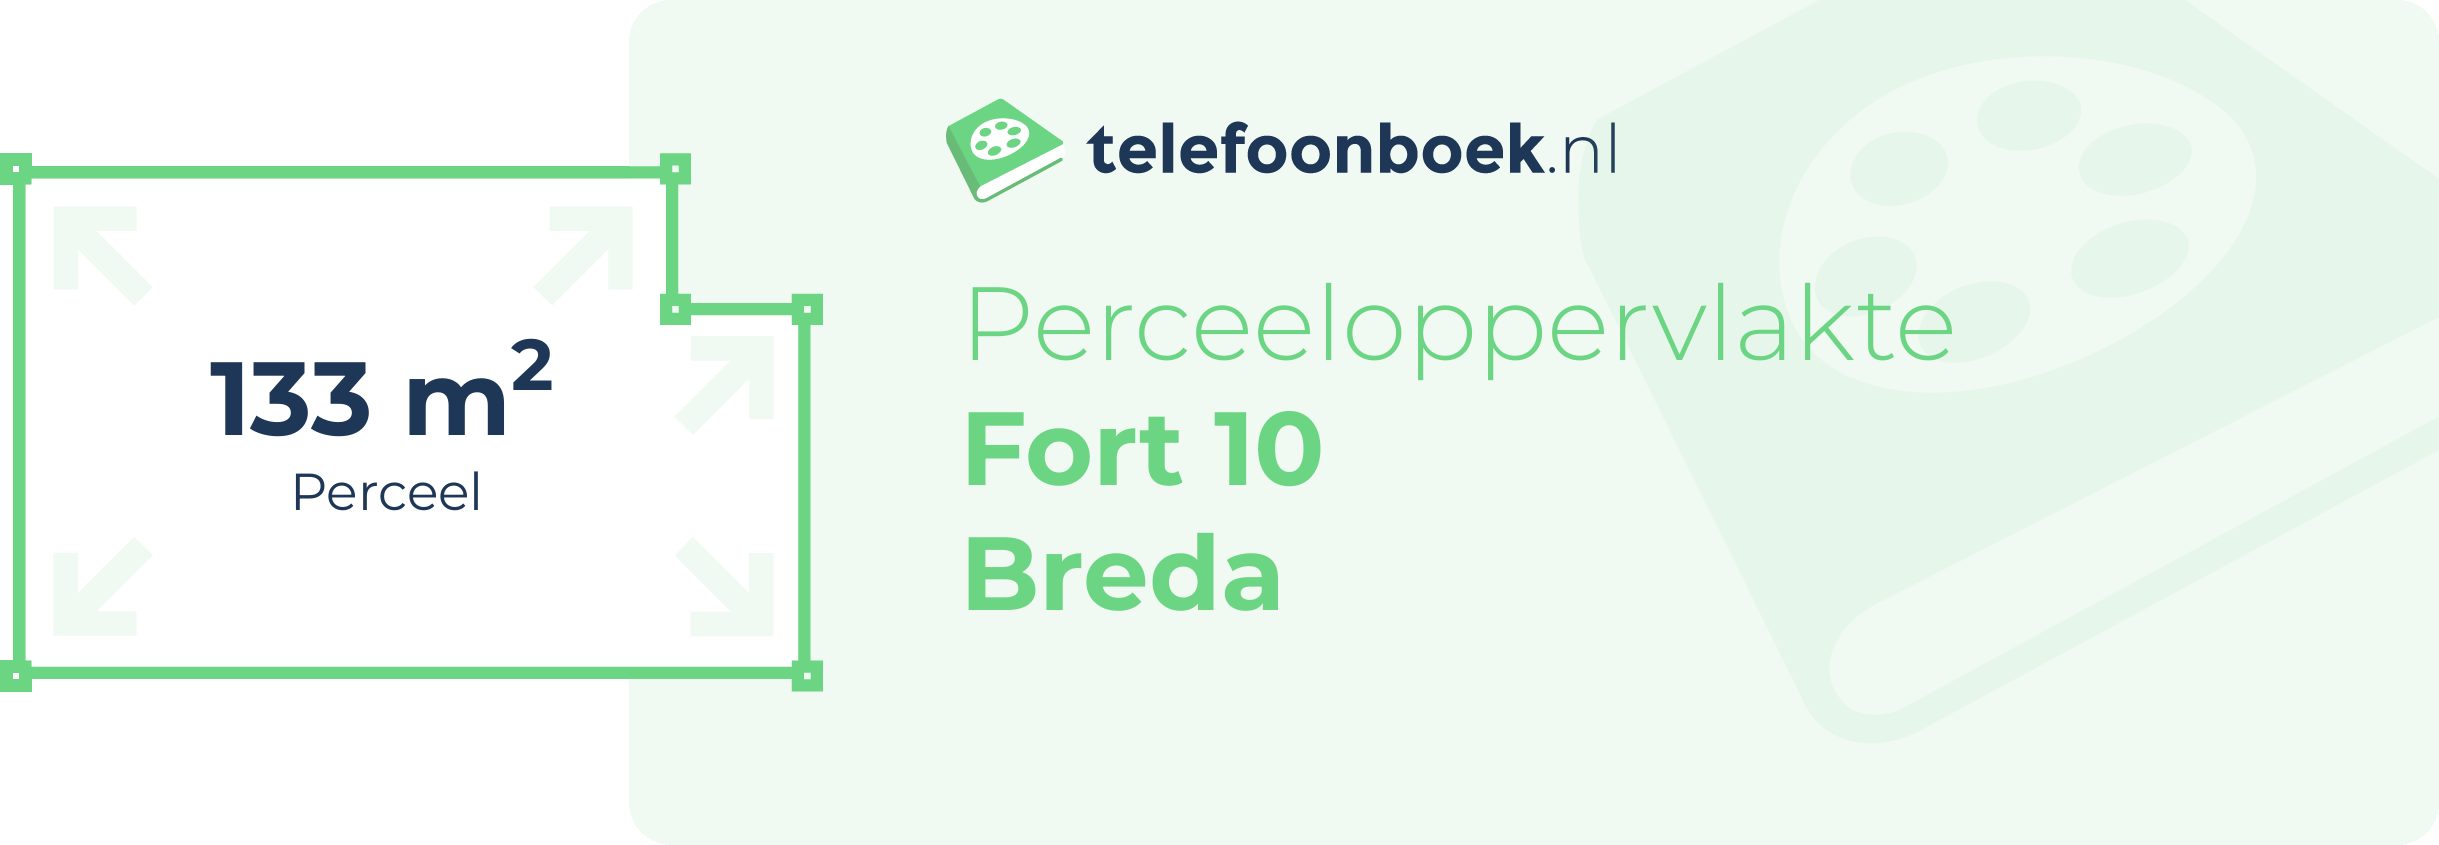 Perceeloppervlakte Fort 10 Breda